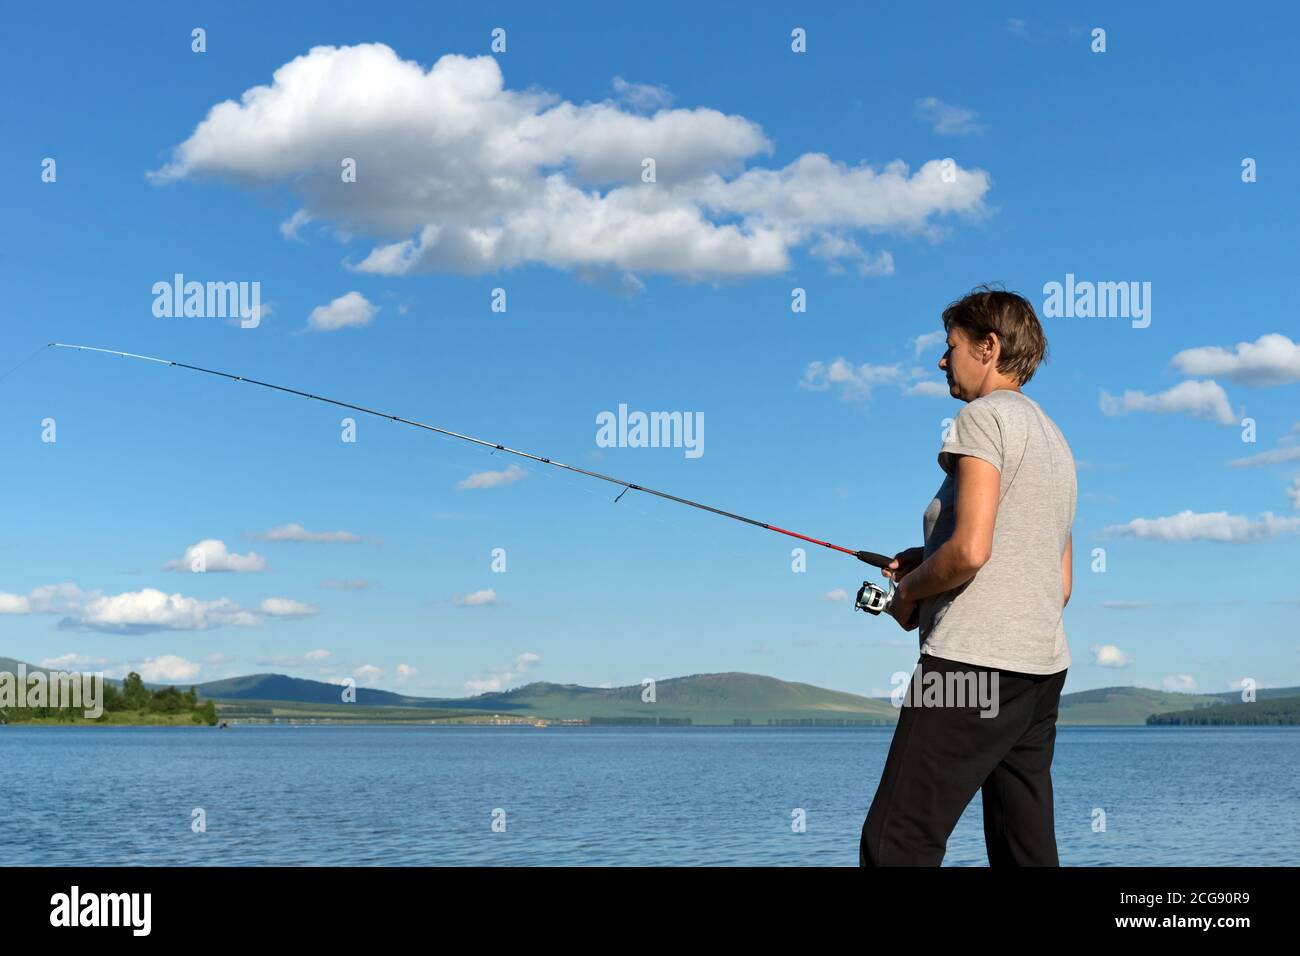 Une femme pêcheur attrape un poisson d'un lac bleu contre un ciel bleu avec des nuages. Banque D'Images